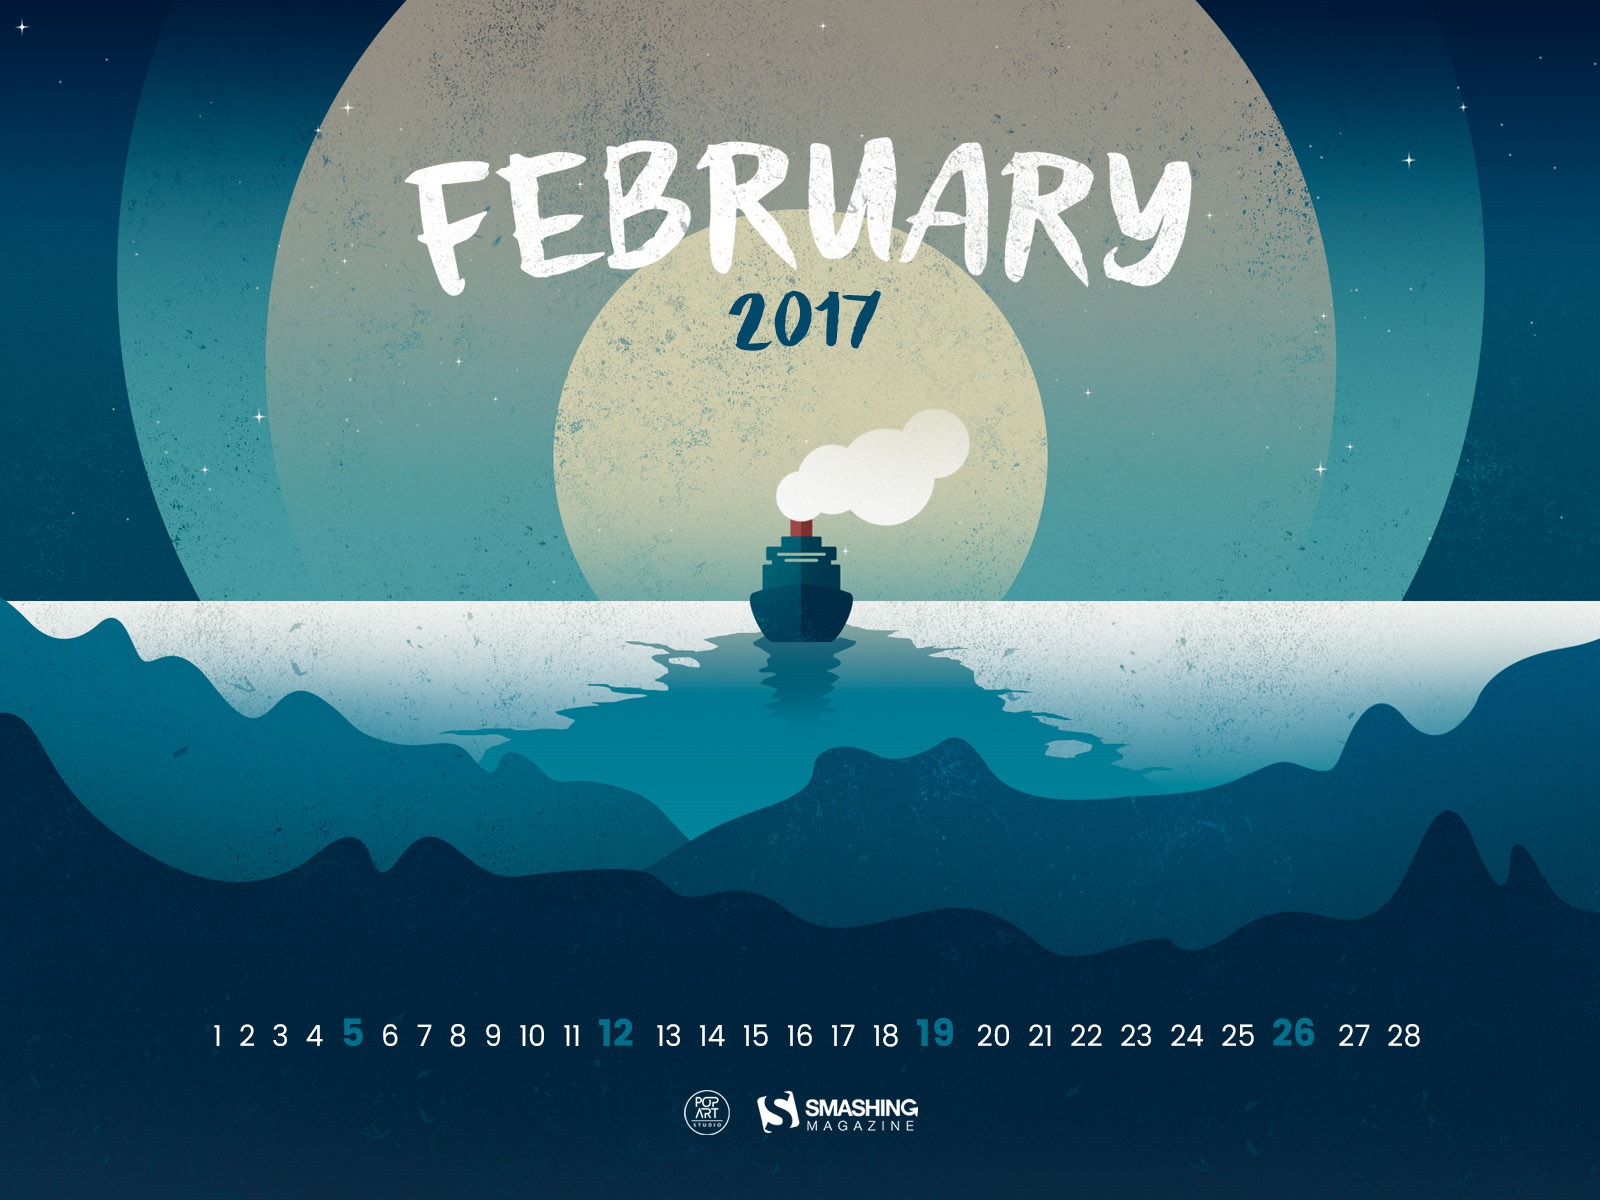 February 2017 calendar wallpaper (2) #2 - 1600x1200